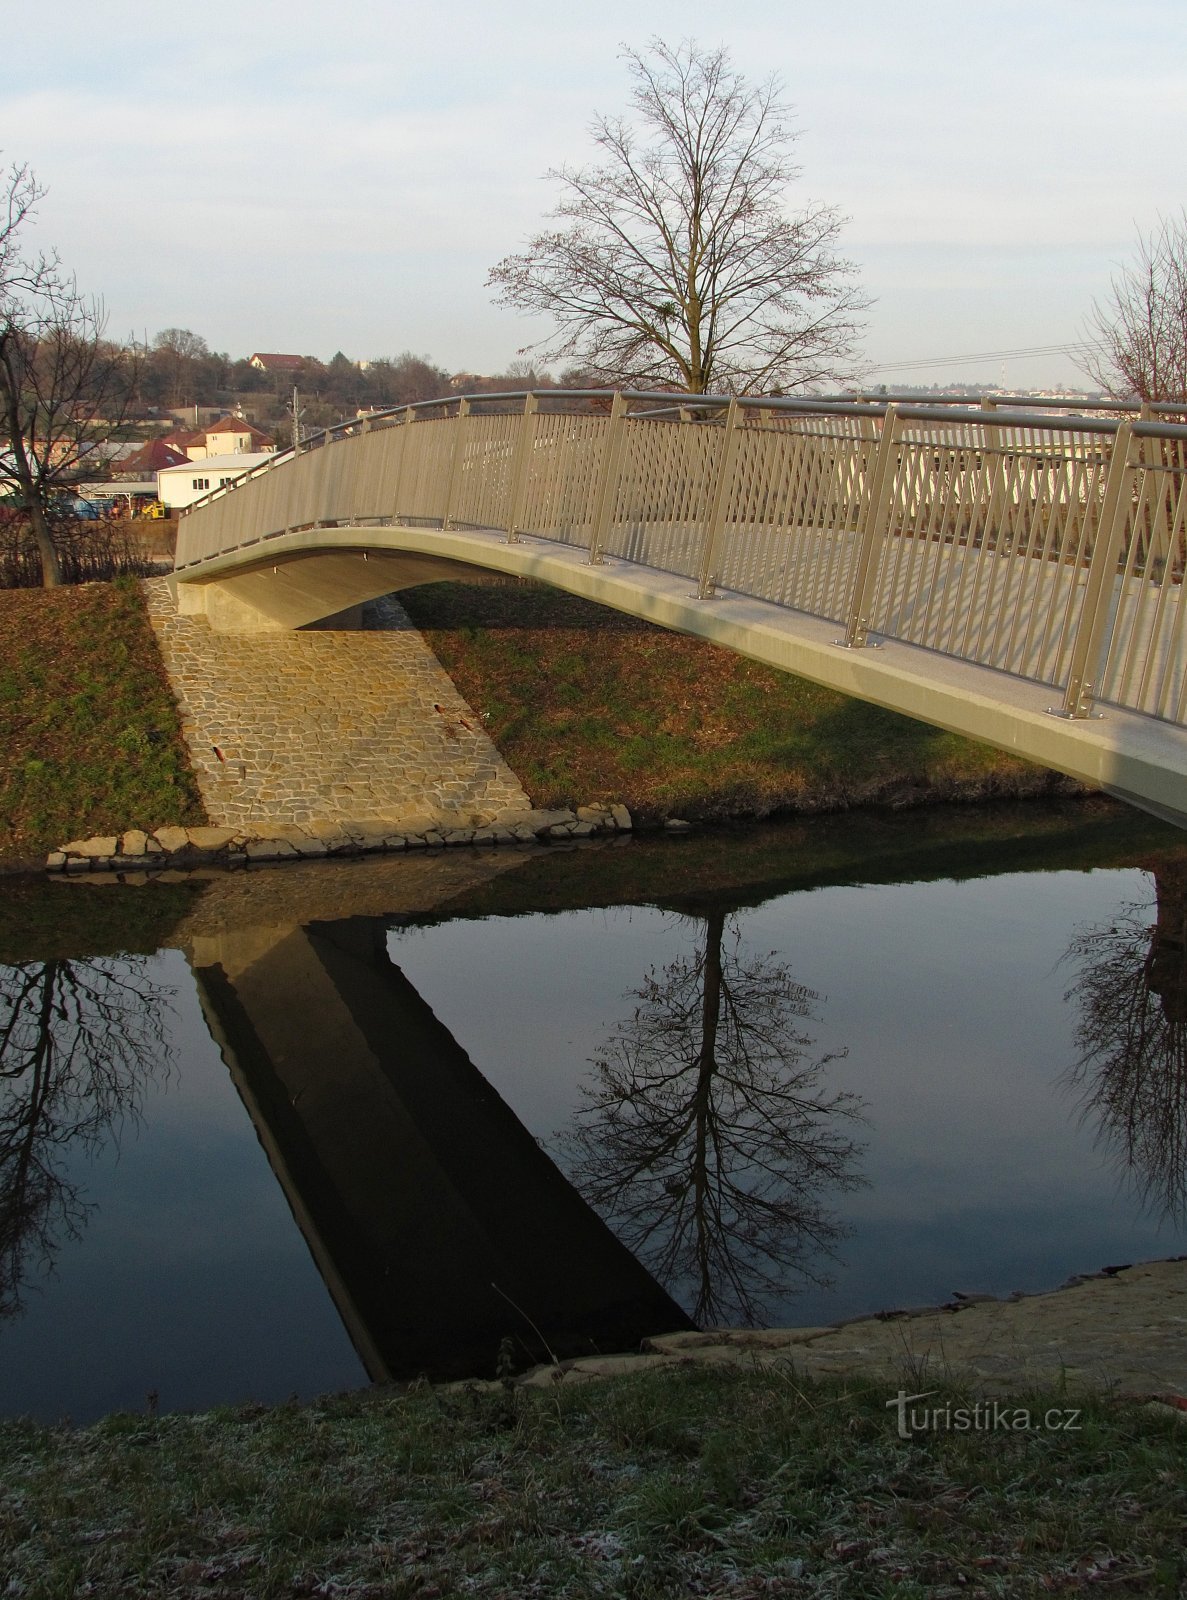 Η νέα πεζογέφυρα Zlín